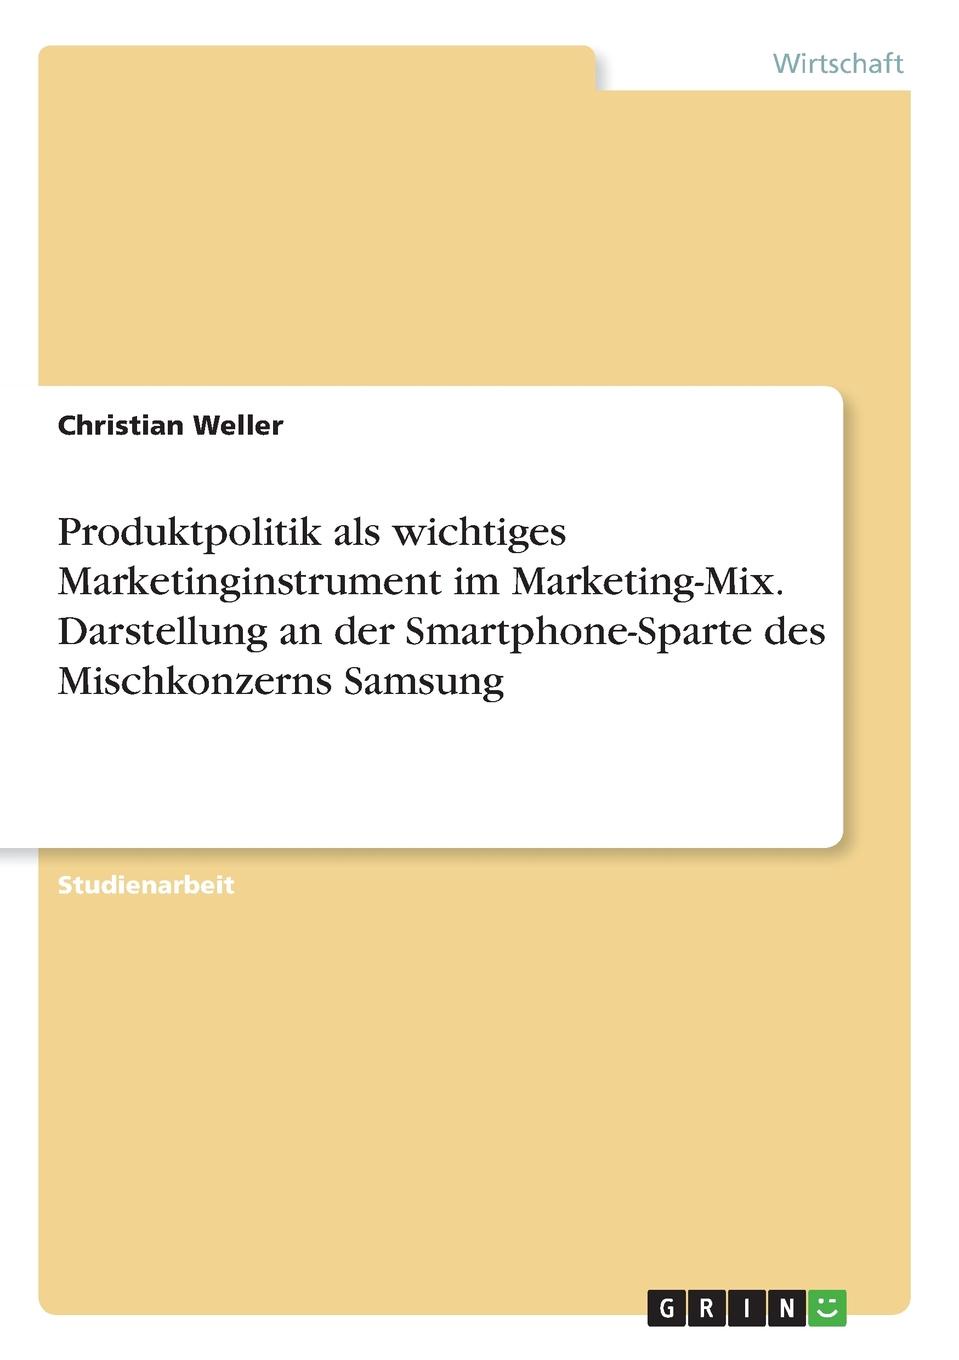 Produktpolitik als wichtiges Marketinginstrument im Marketing-Mix. Darstellung an der Smartphone-Sparte des Mischkonzerns Samsung